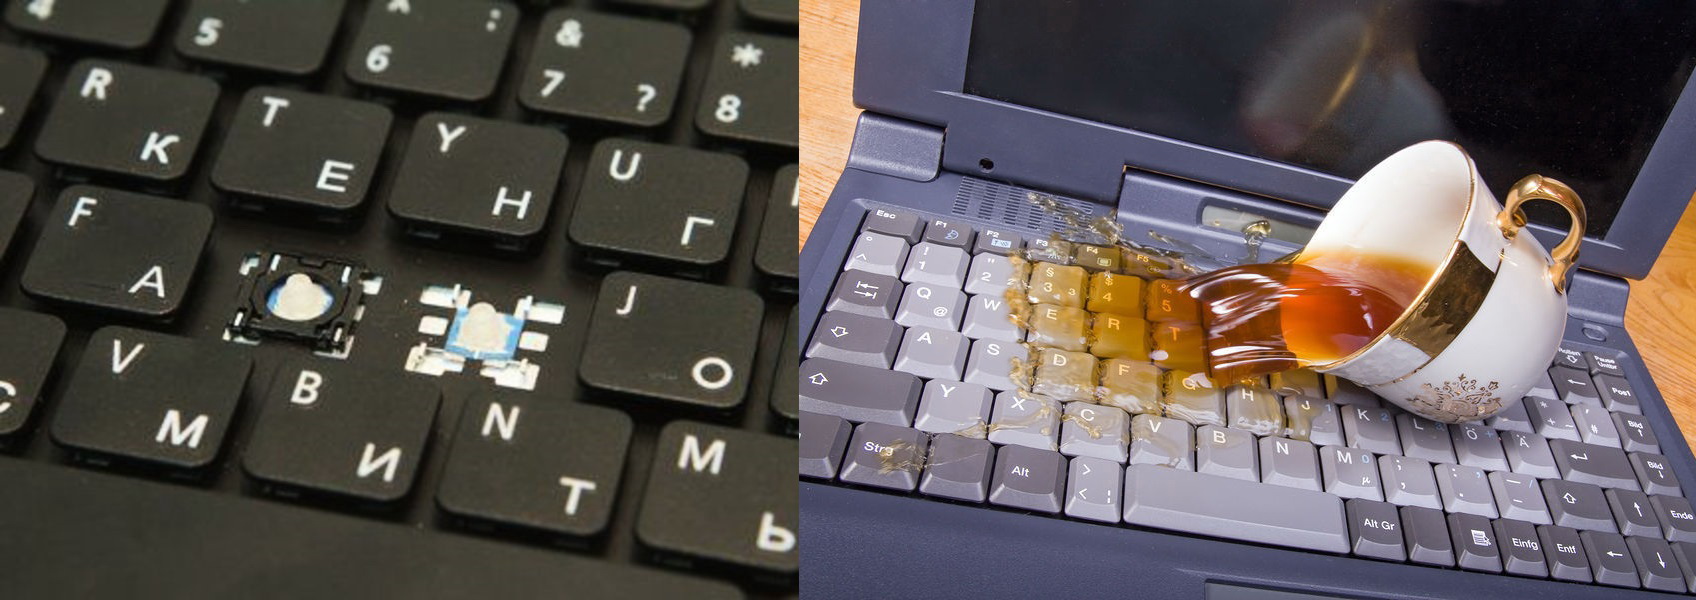 Клавиатура ноутбука – возможные причины поломки